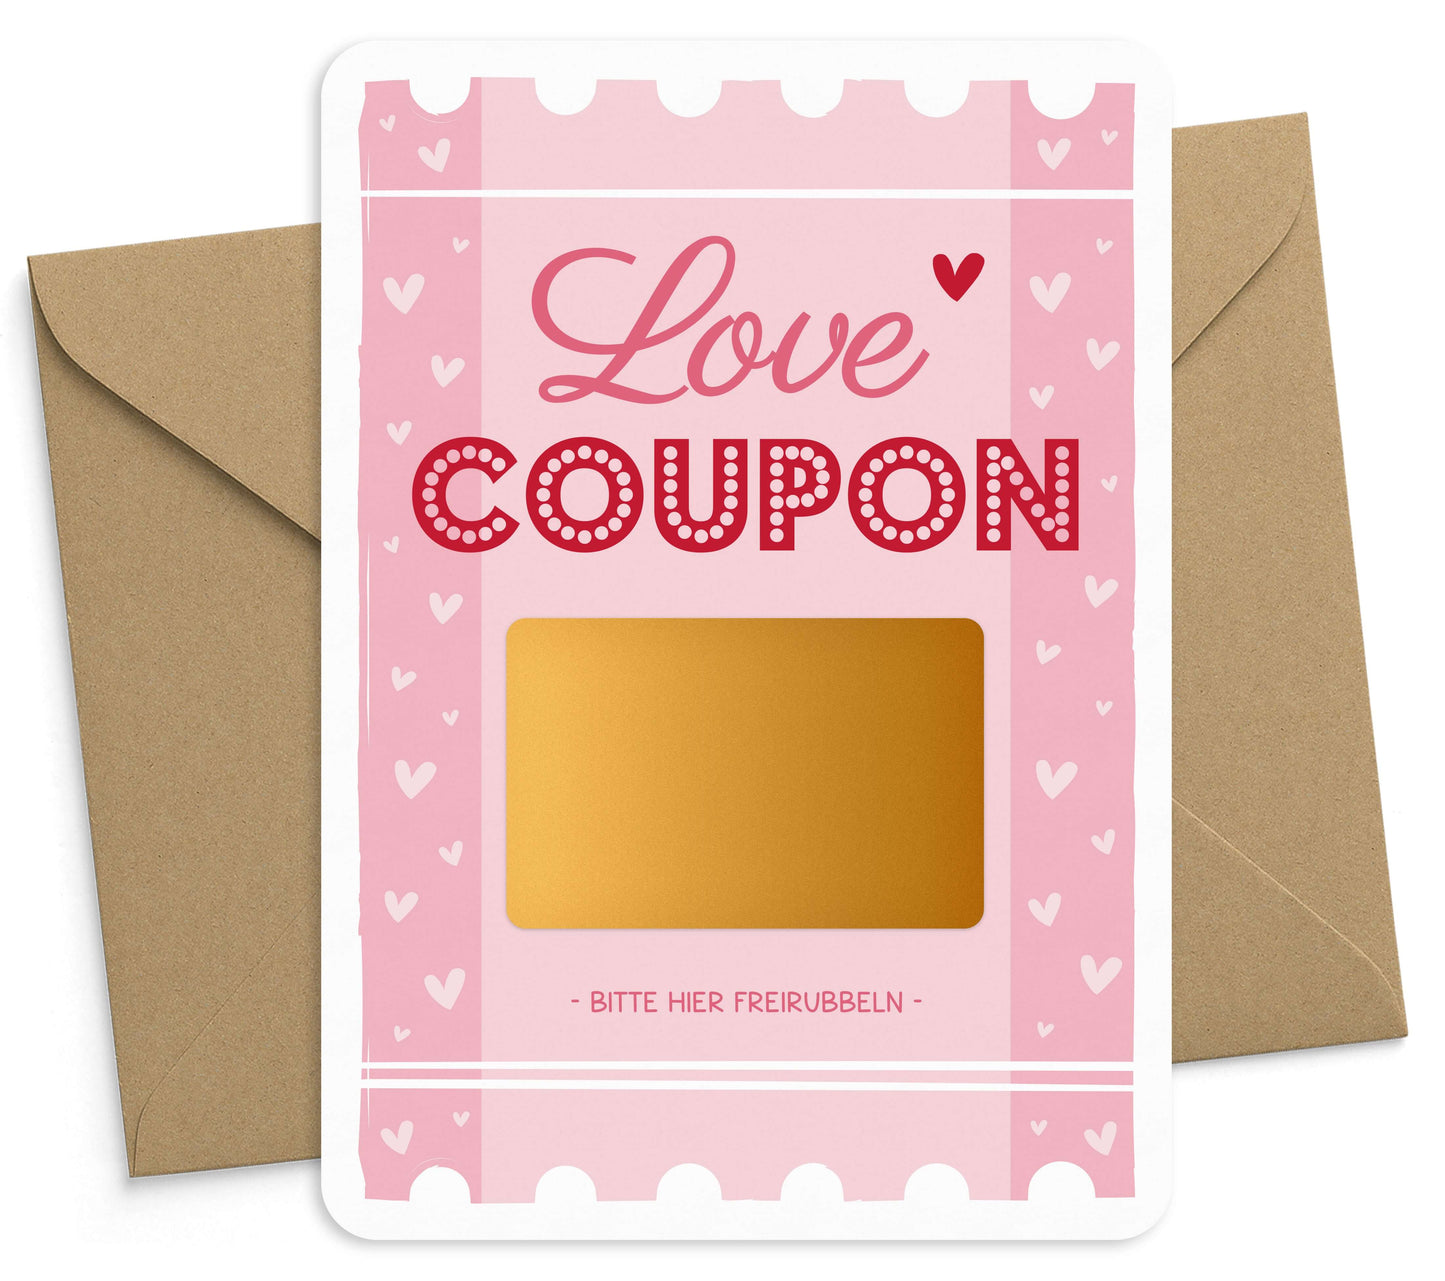 Rubbelkarte zum selber beschriften Gutschein Love Coupon mit Umschlag